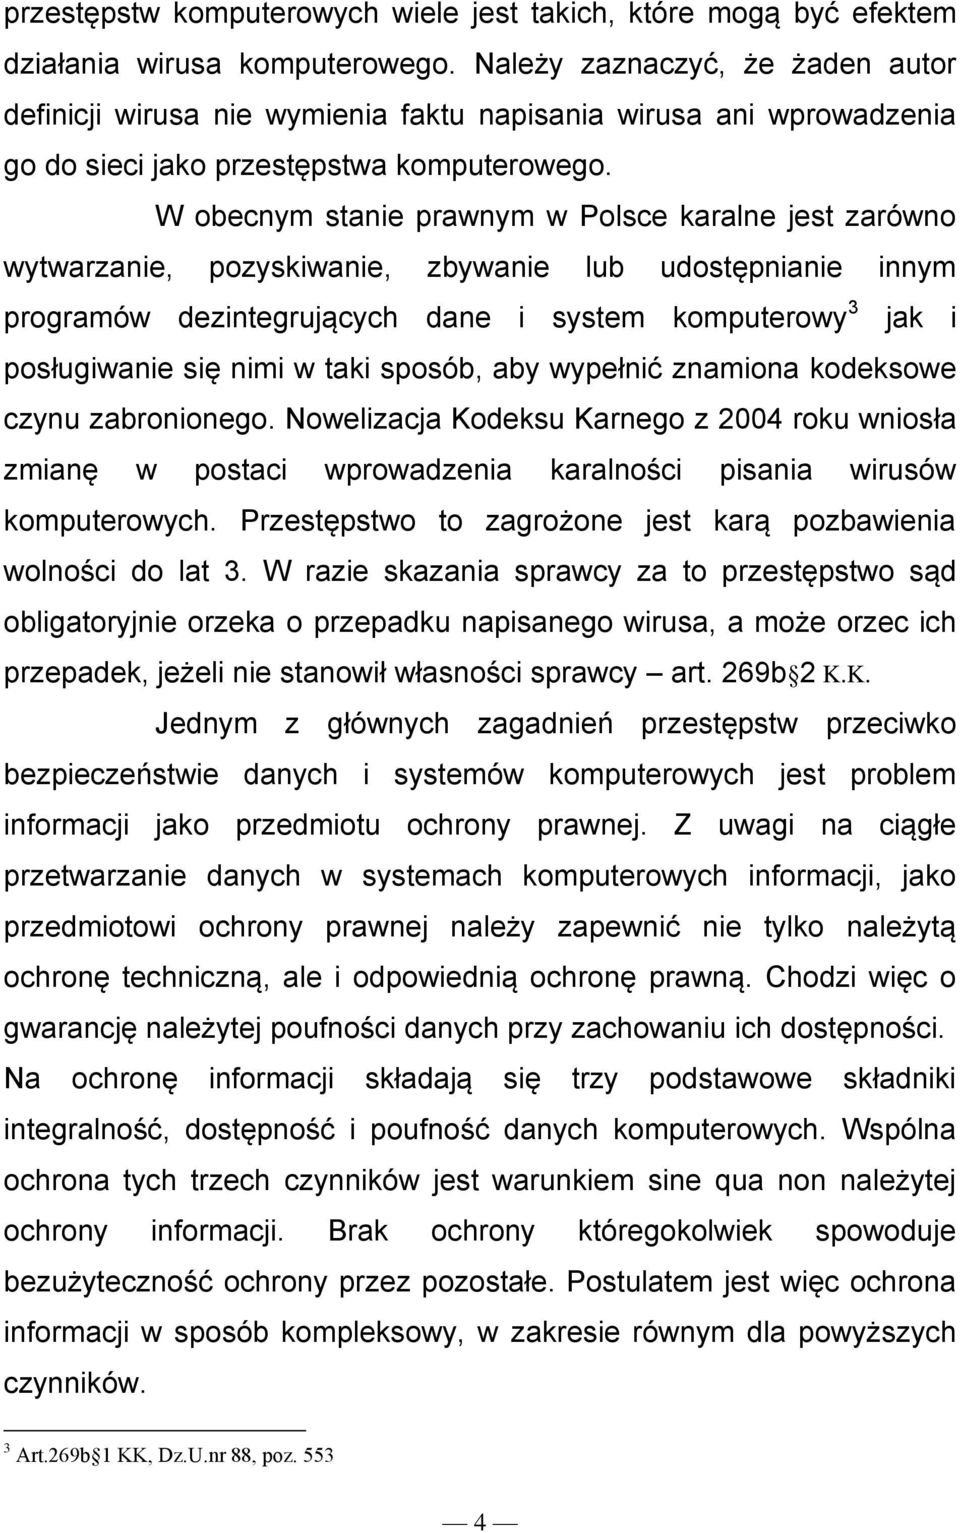 W obecnym stanie prawnym w Polsce karalne jest zarówno wytwarzanie, pozyskiwanie, zbywanie lub udostępnianie innym programów dezintegrujących dane i system komputerowy 3 jak i posługiwanie się nimi w